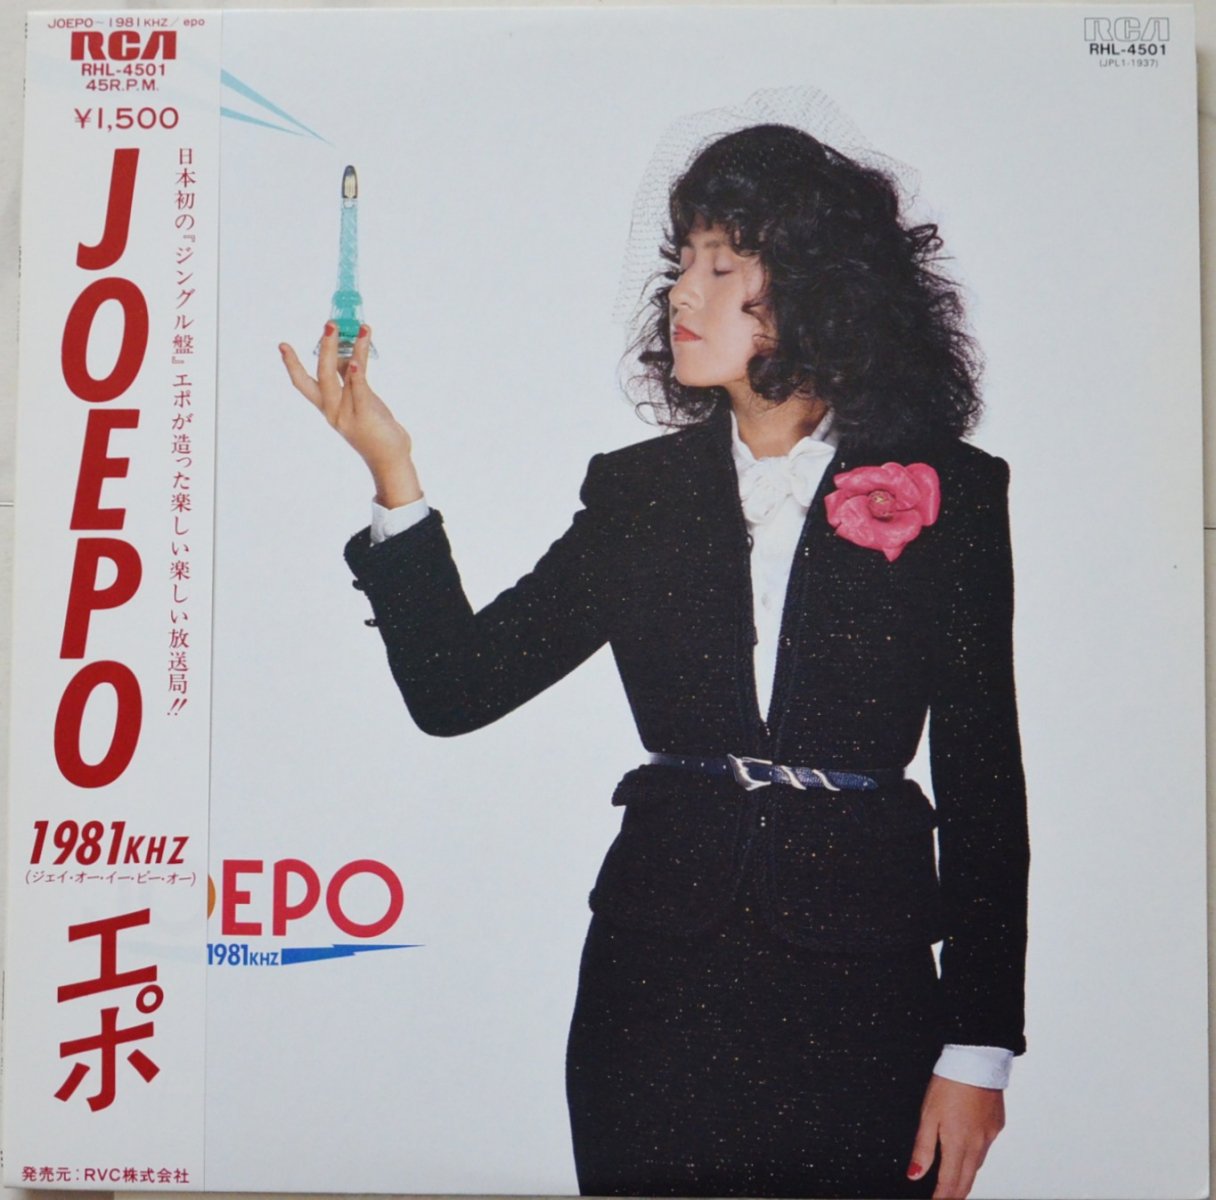 エポ EPO / JOEPO 〜 1981KHZ (LP)